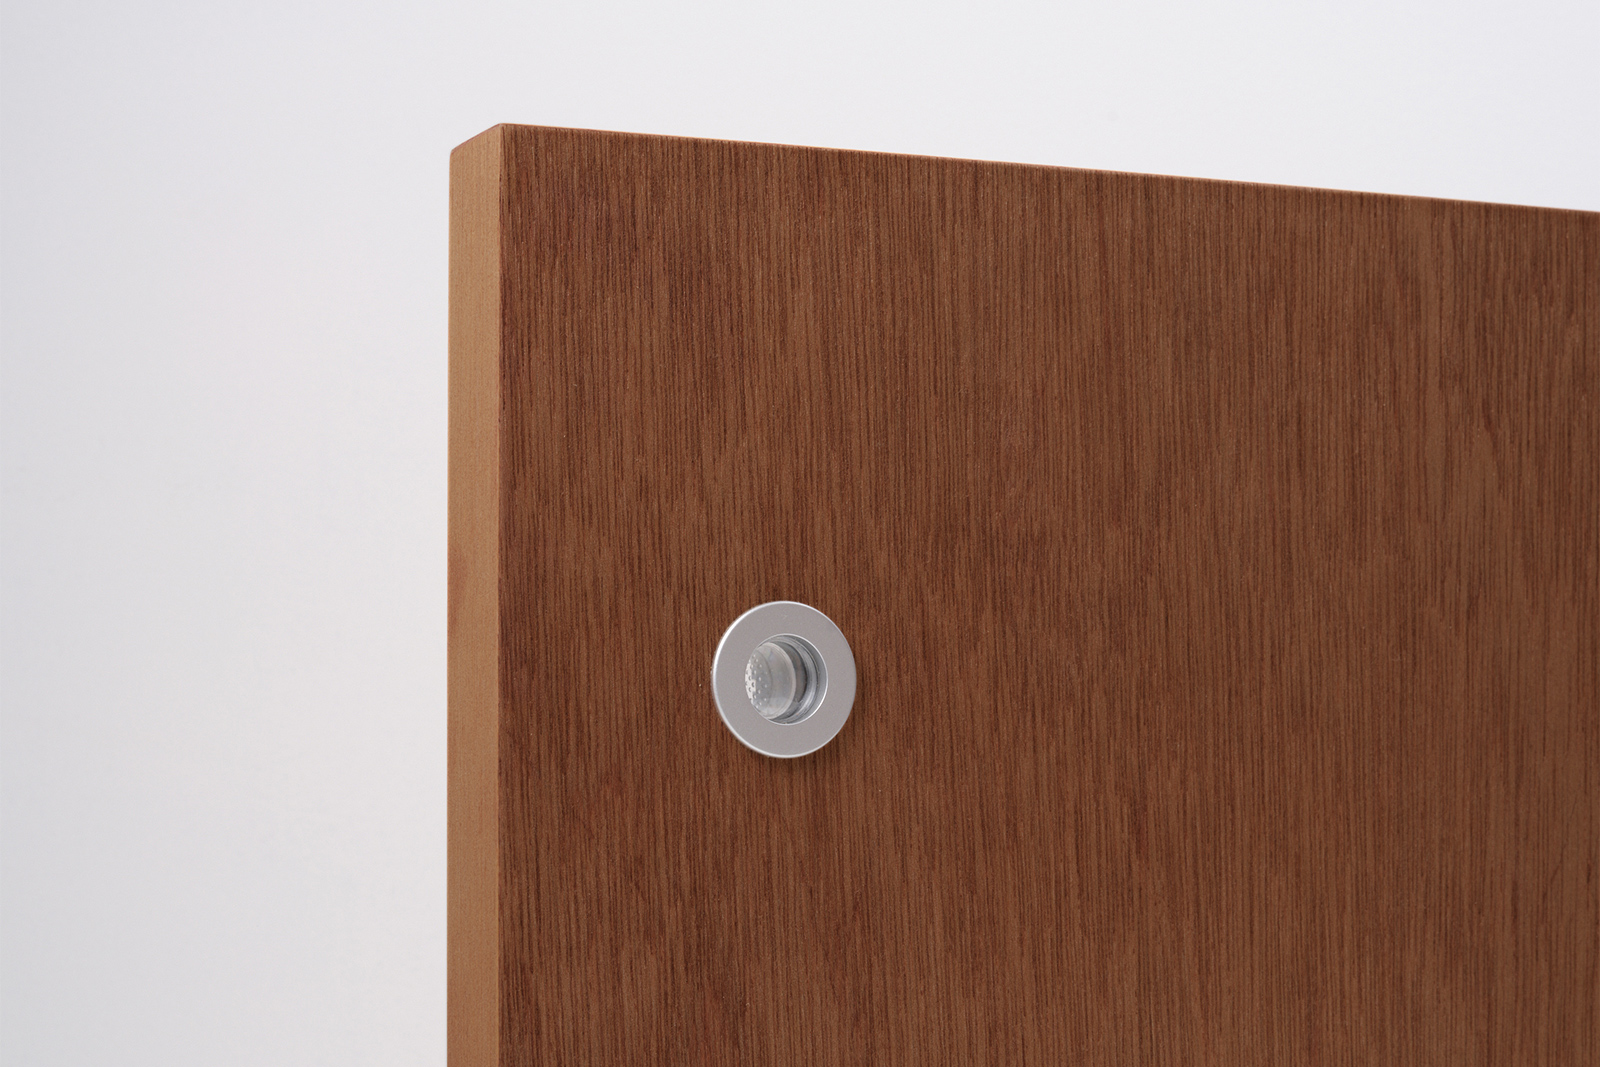 木製ユニットドア 開き戸 ラワン DW-DR012-03-G191 表示錠を選択すると付属される「明かりとり」